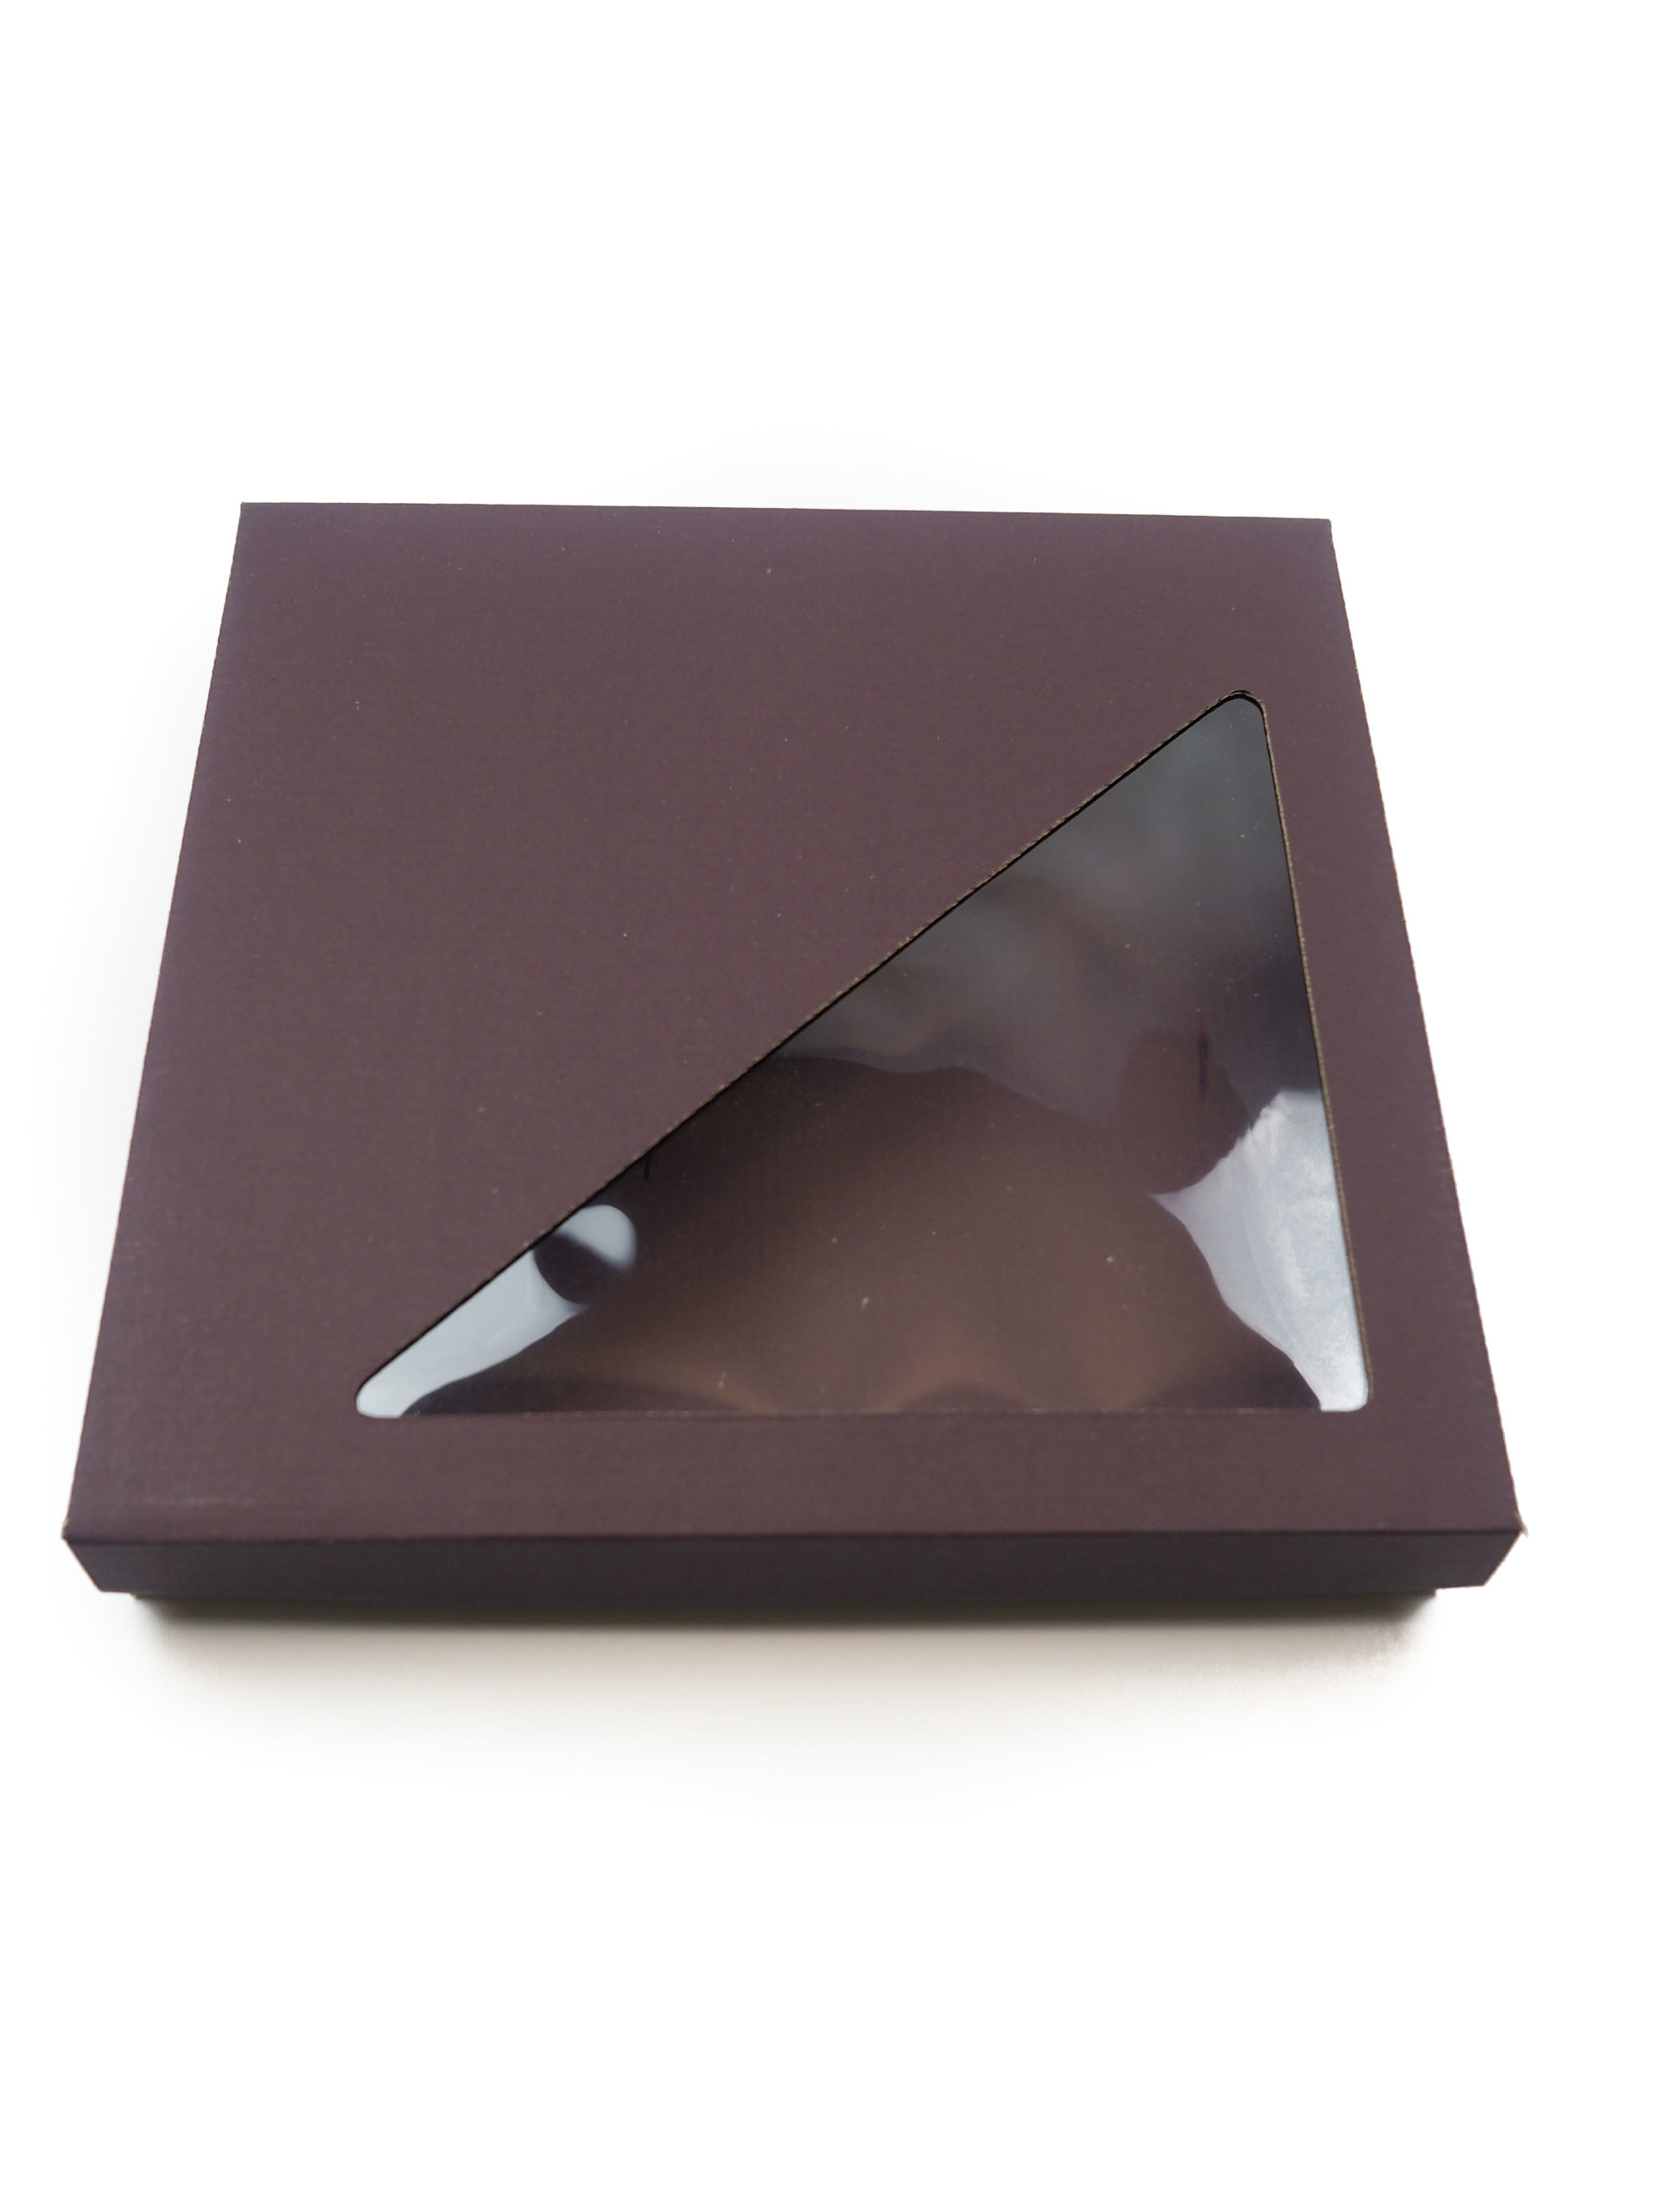 Dárková krabička vyrobena z 2vrstvé lepenky s oknem ve víčku.